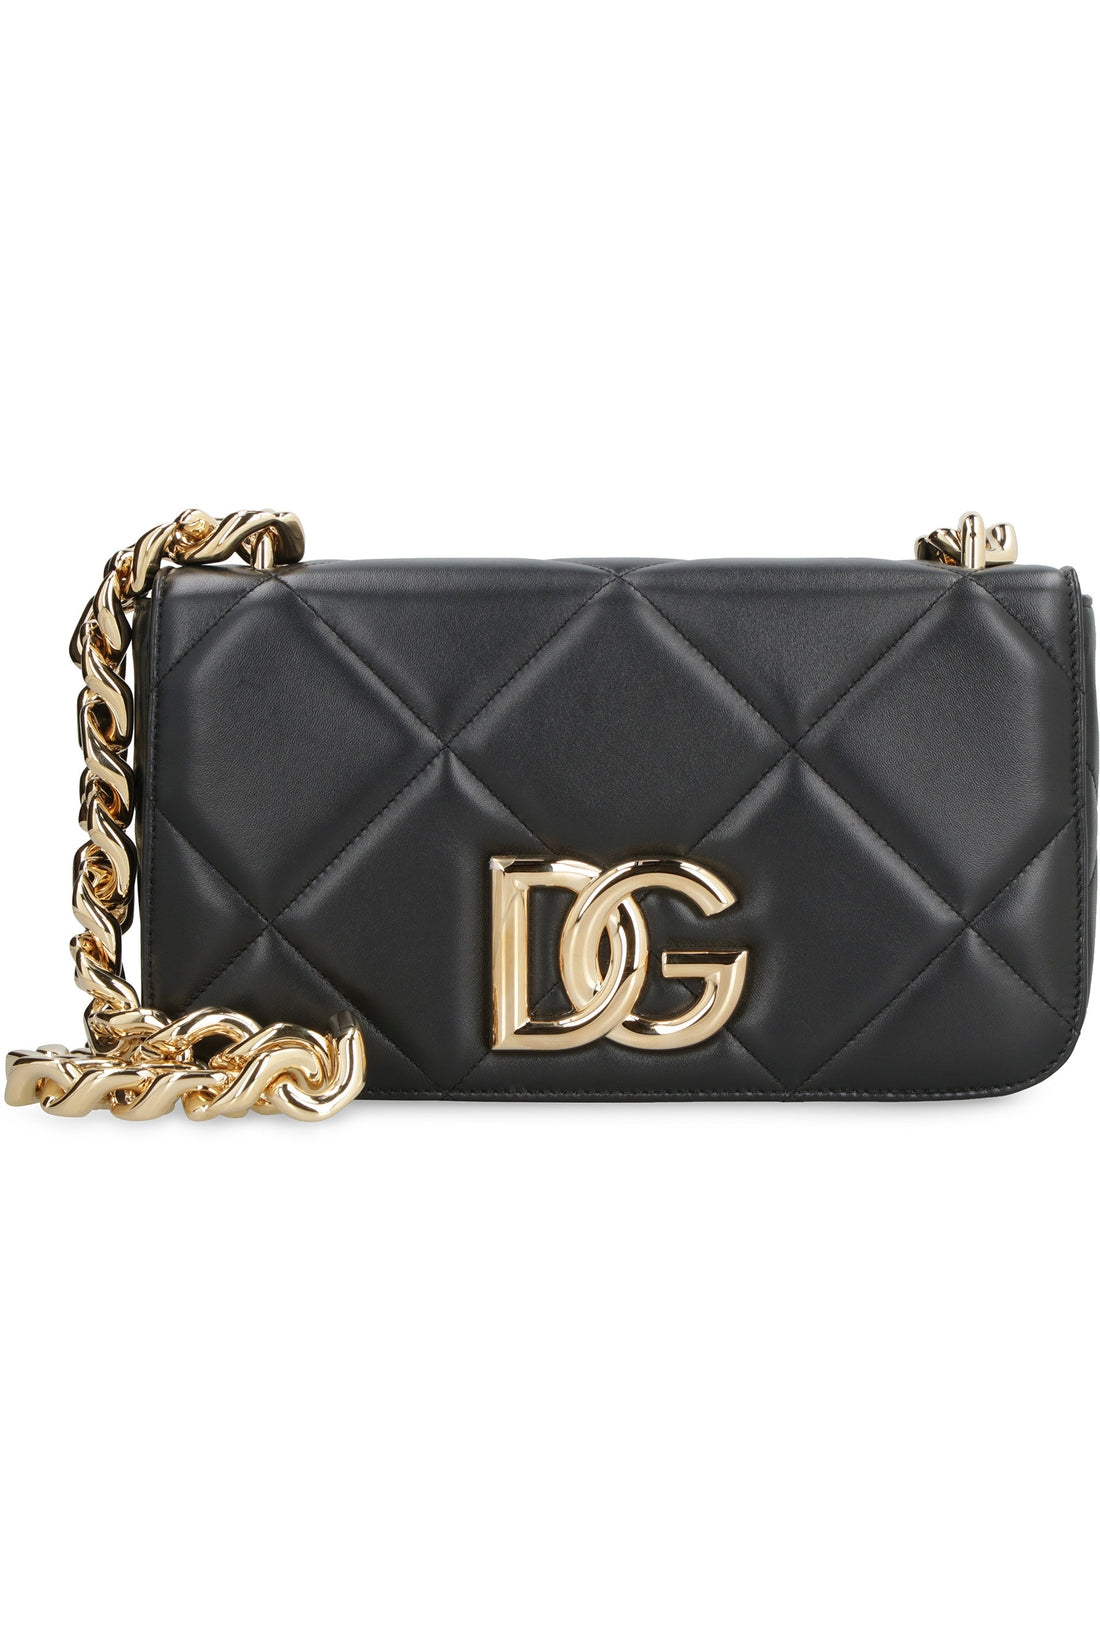 Dolce & Gabbana-OUTLET-SALE-3.5 leather shoulder bag-ARCHIVIST